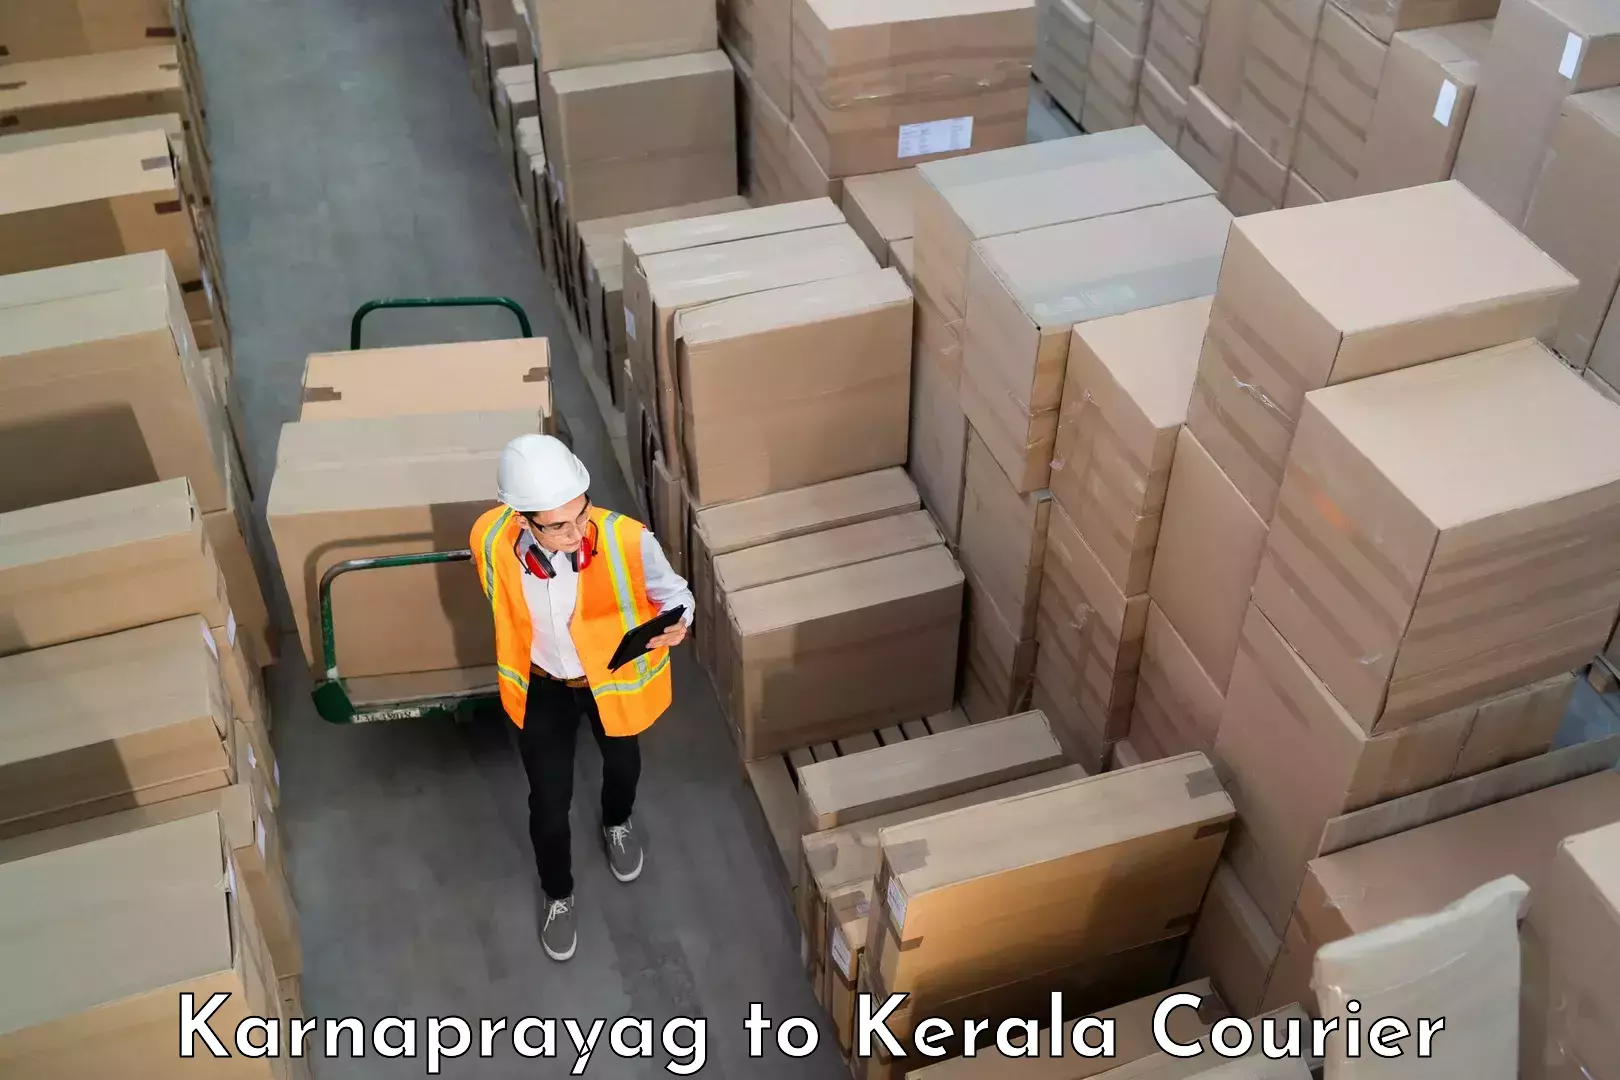 Reliable luggage courier Karnaprayag to Kerala